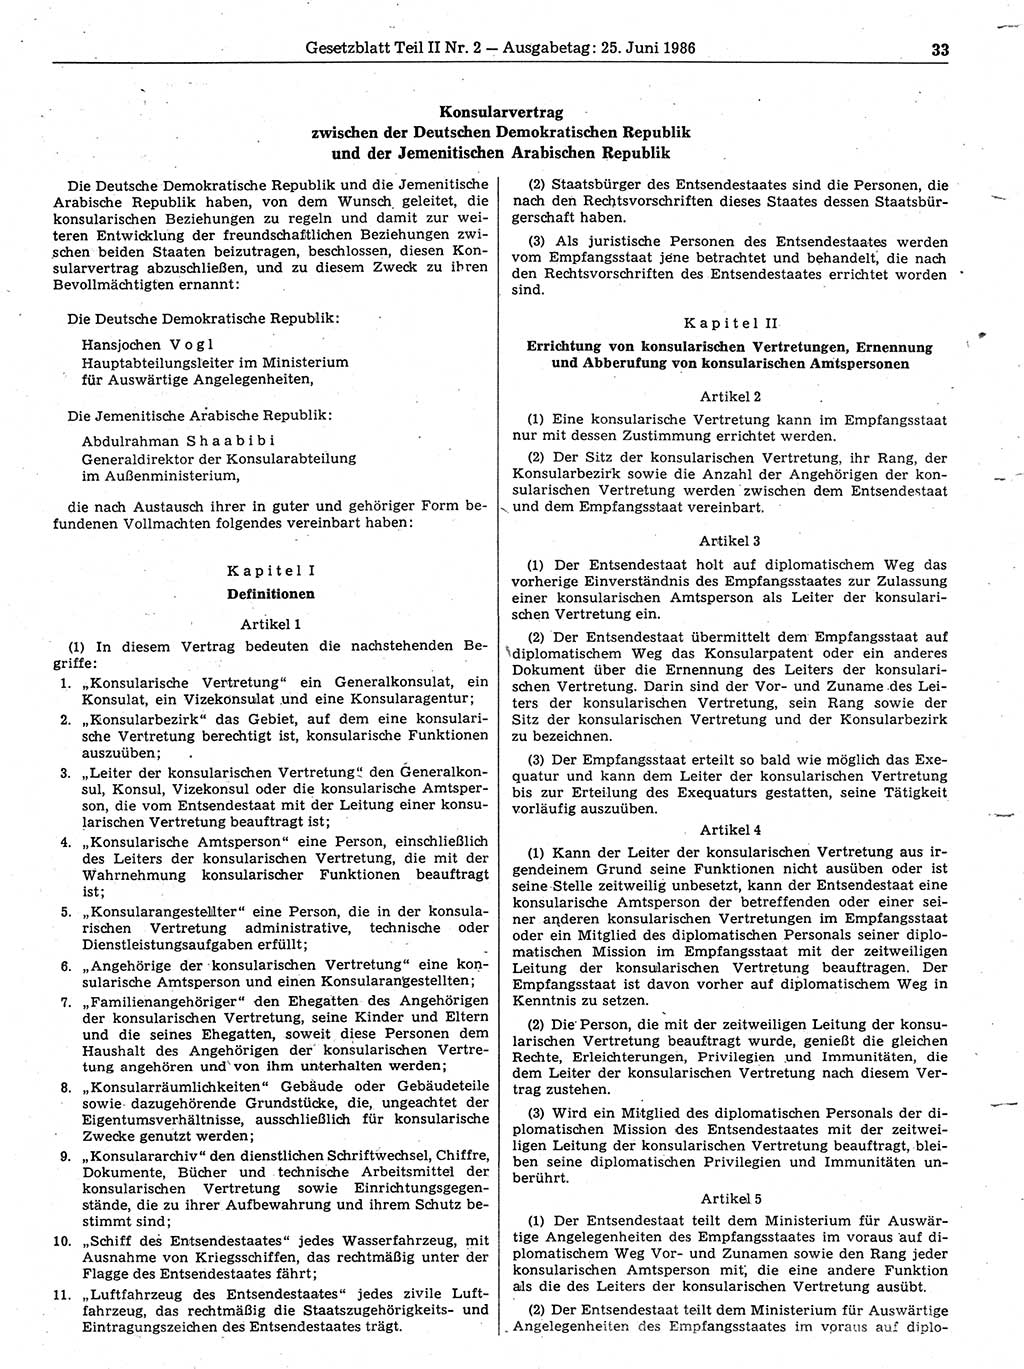 Gesetzblatt (GBl.) der Deutschen Demokratischen Republik (DDR) Teil ⅠⅠ 1986, Seite 33 (GBl. DDR ⅠⅠ 1986, S. 33)